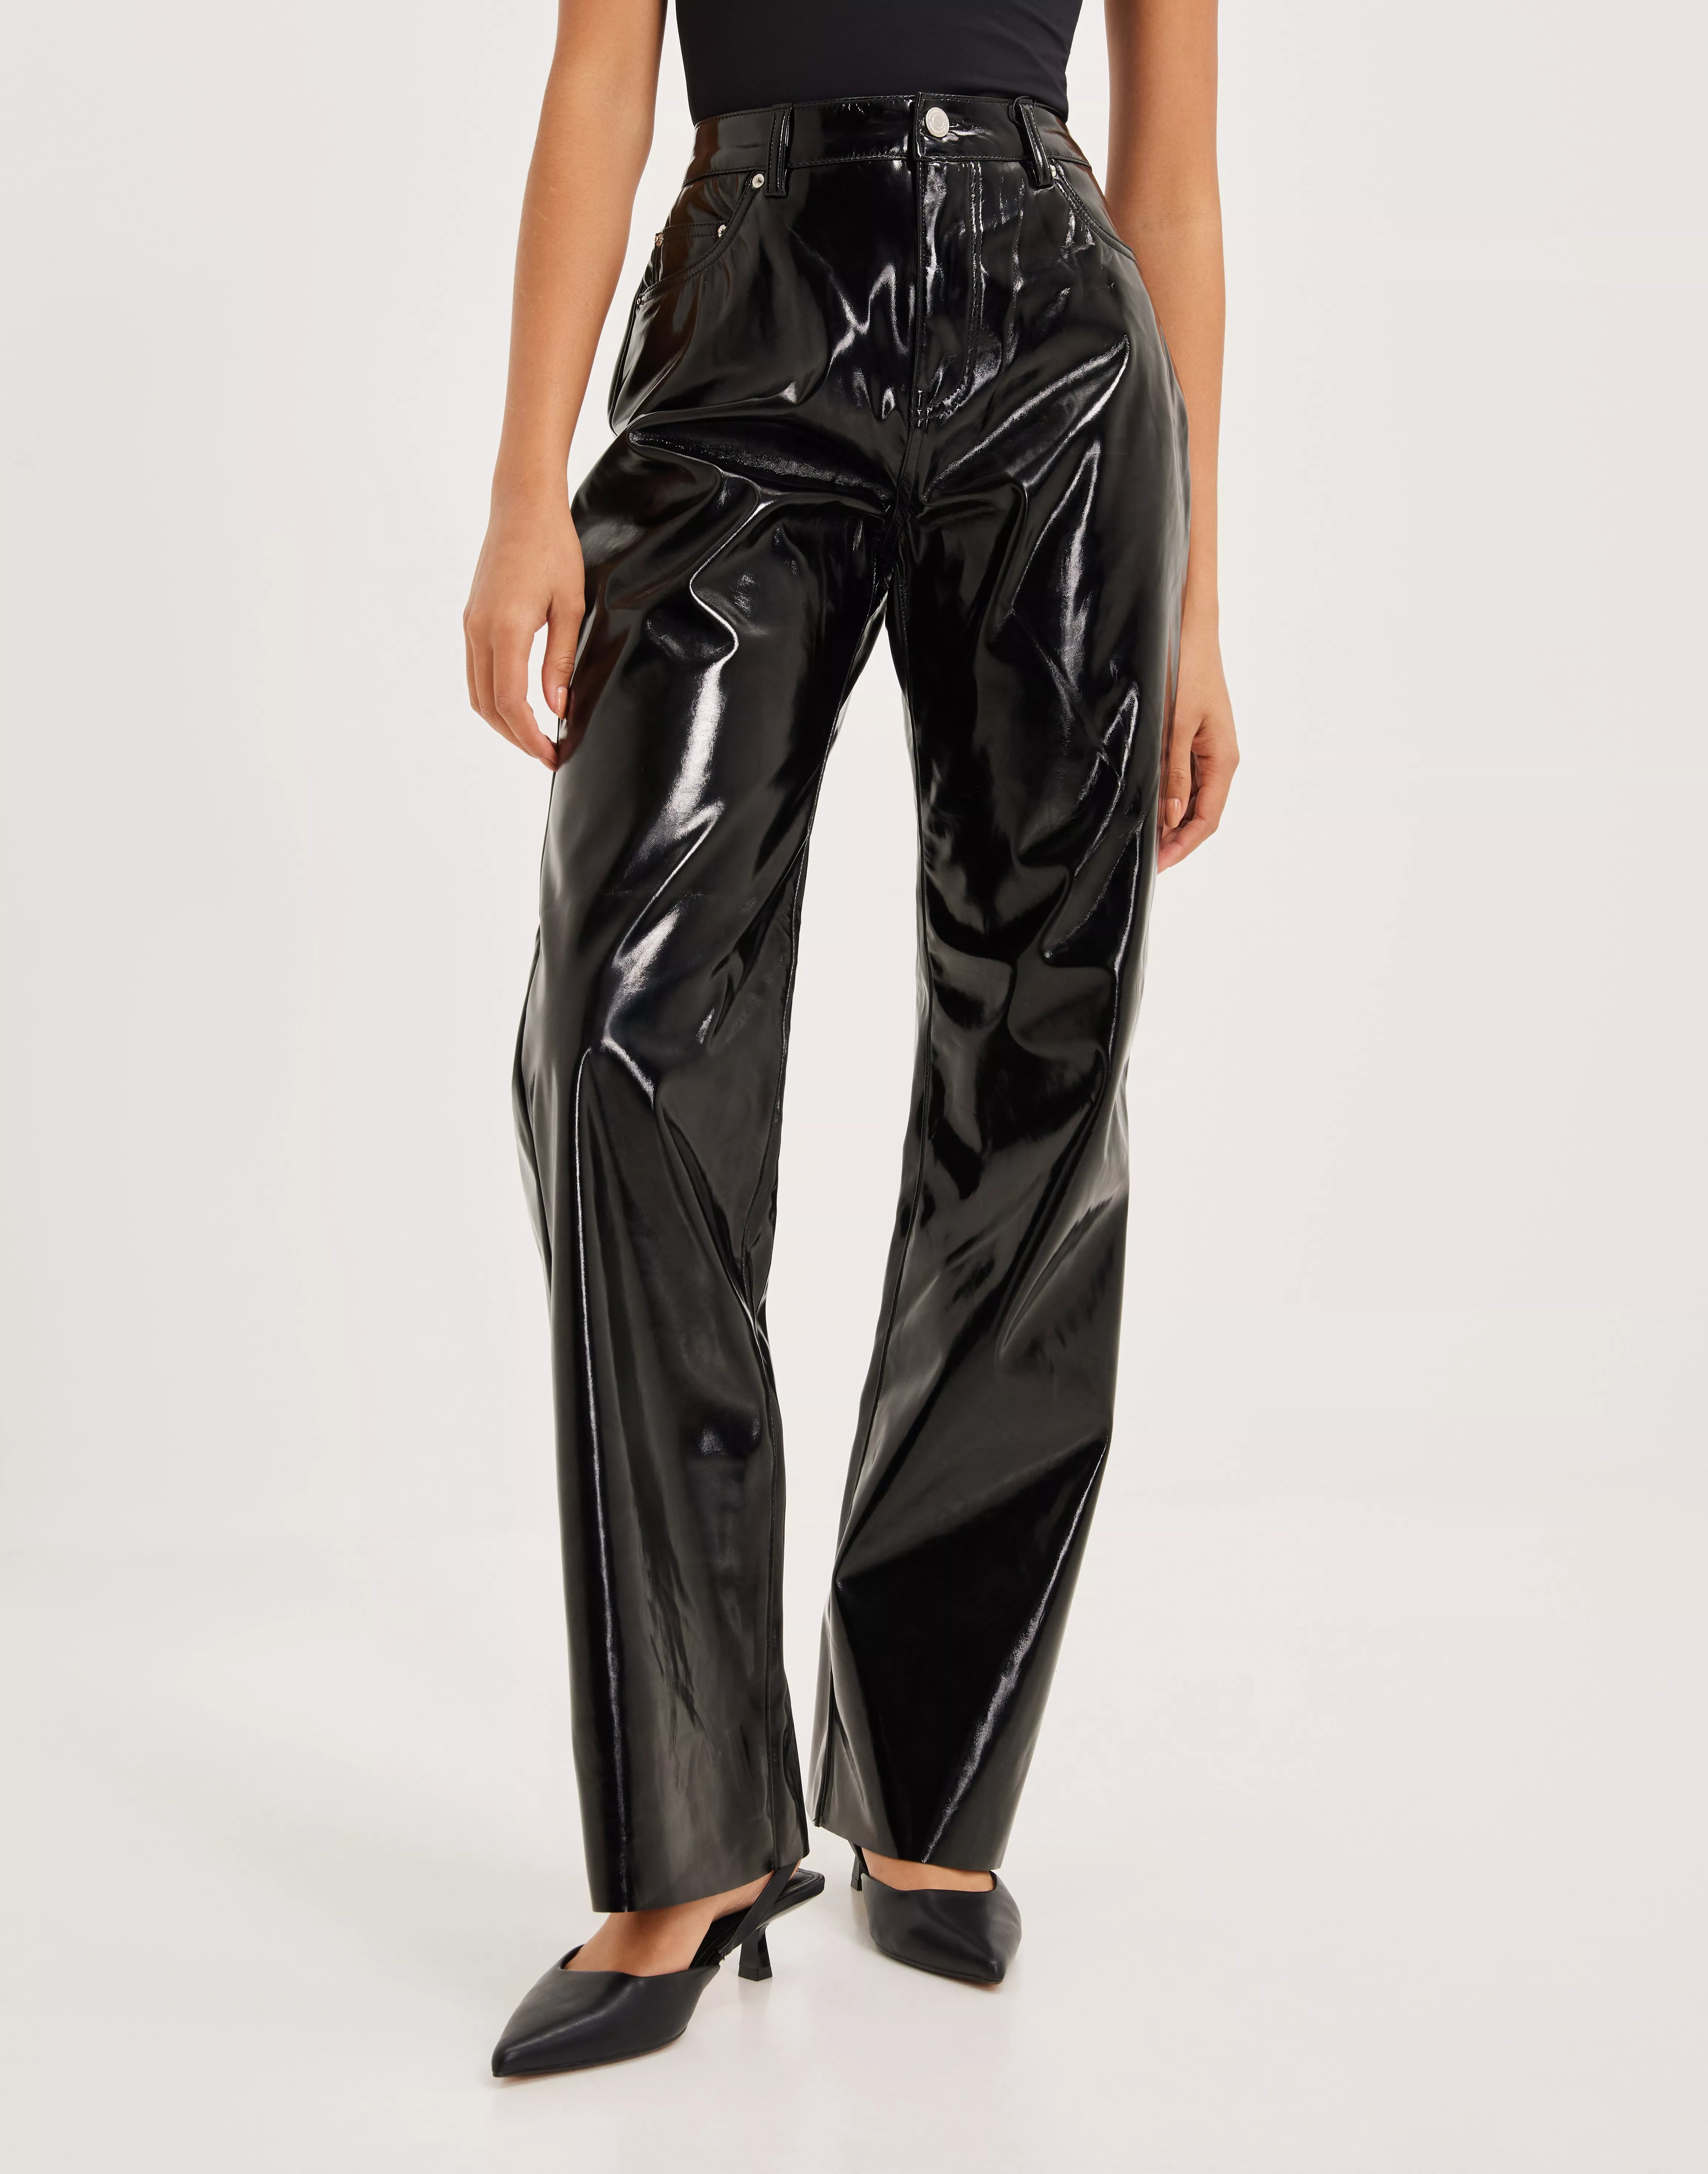 Black Leather Pants/black Extra Long Leggings/shiny Black Pants